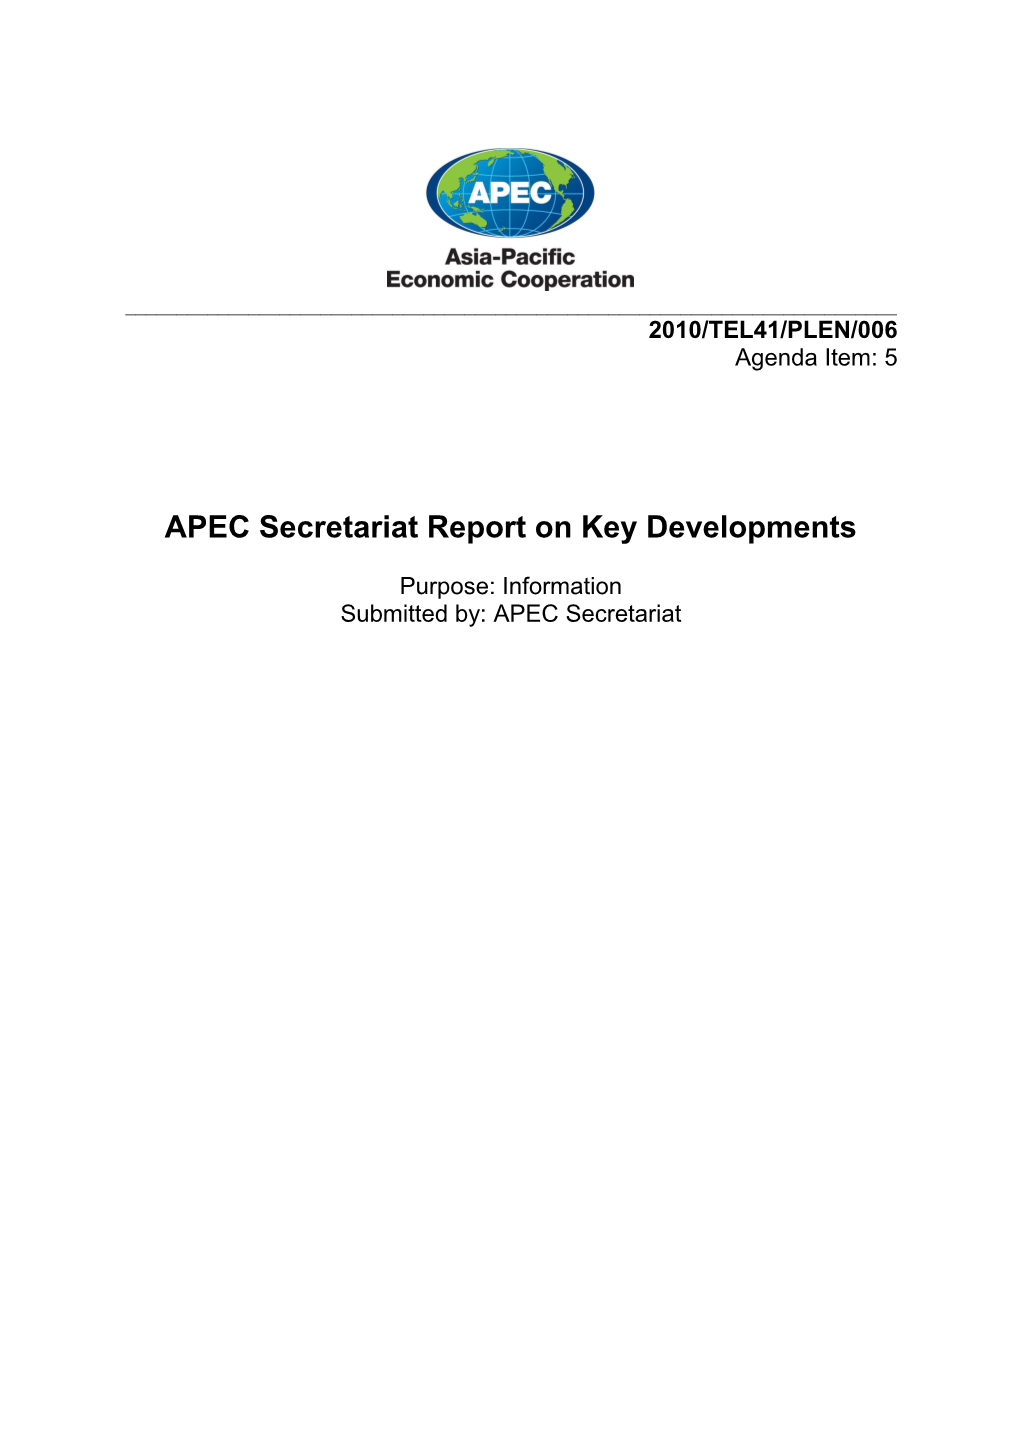 APEC Secretariat Report on Key Developments April 2010